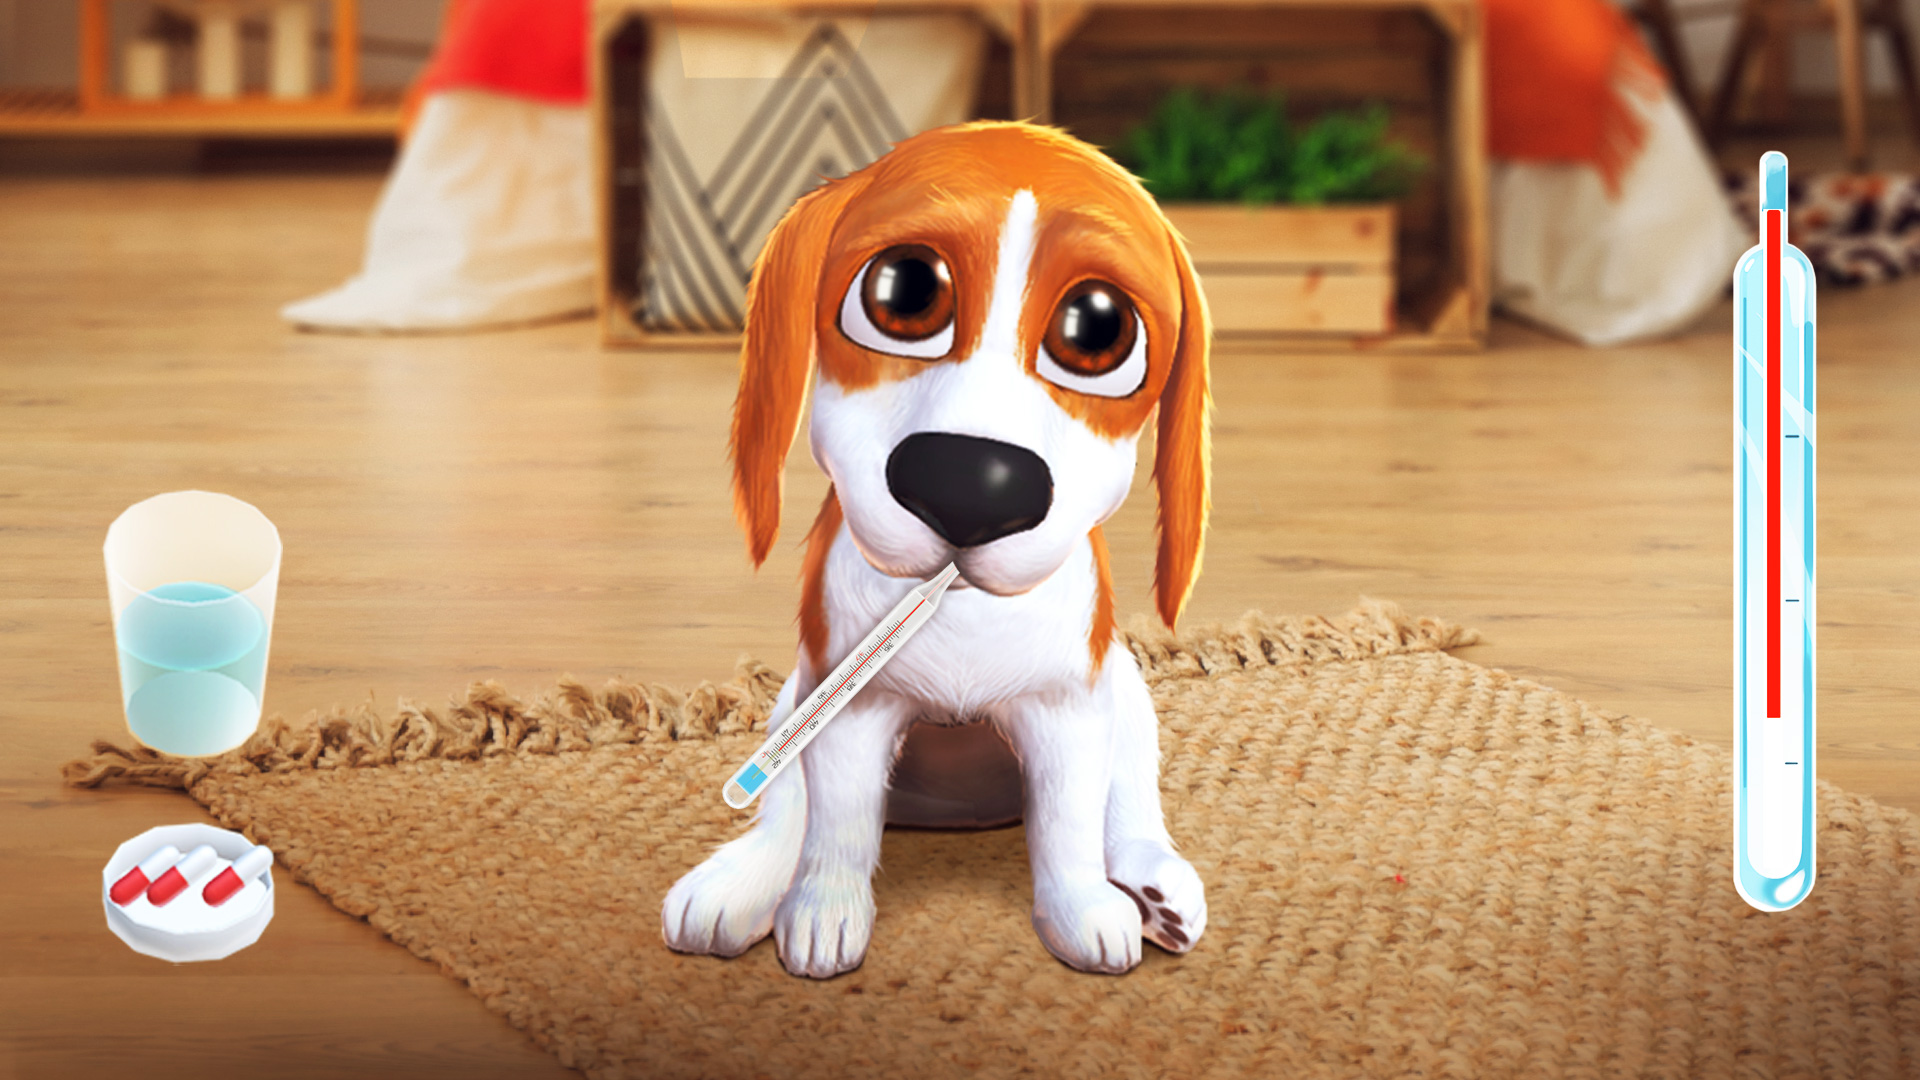 Download & Play Tamadog - Puppy Pet Dog Games on PC & Mac (Emulator)